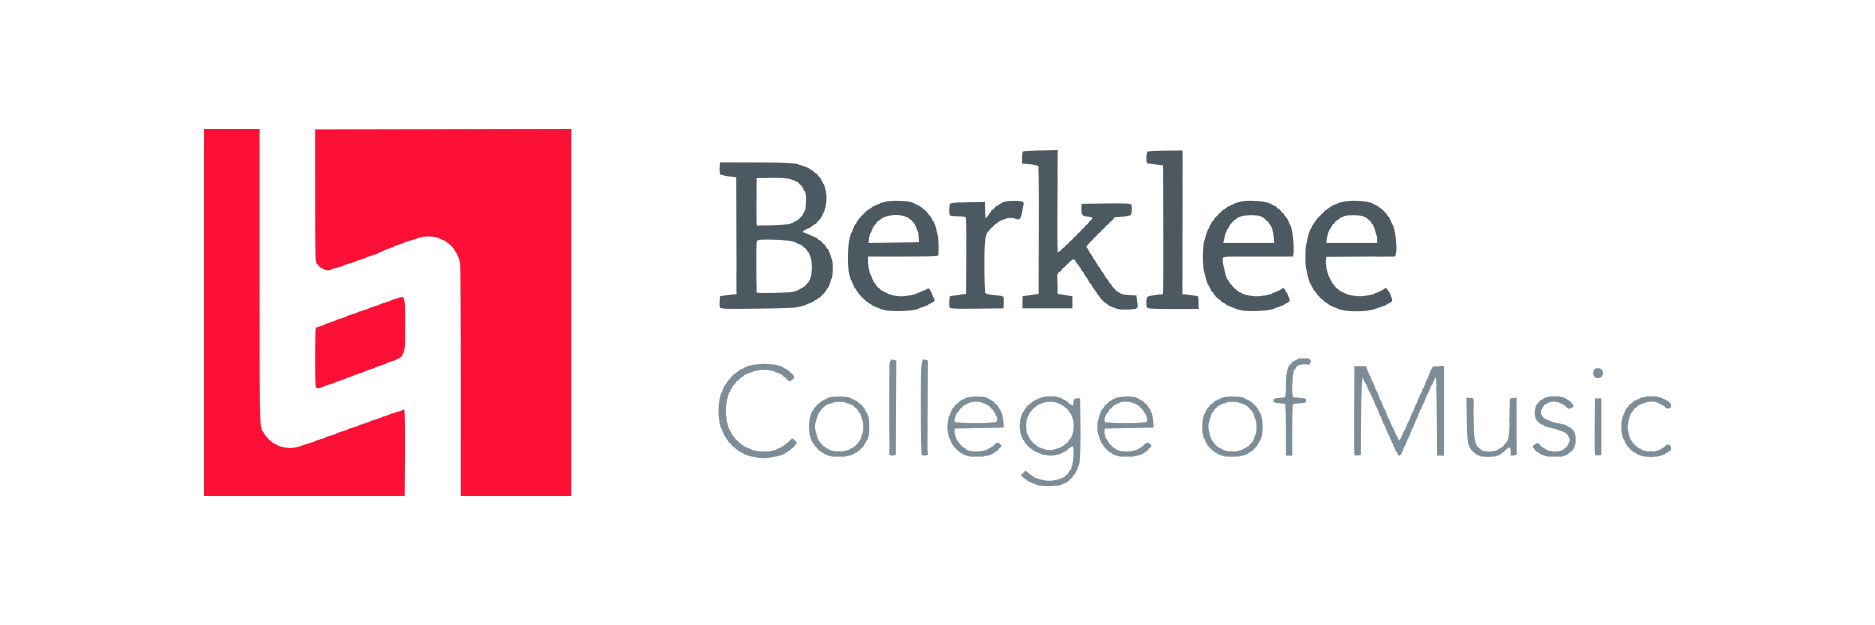 Berklee College